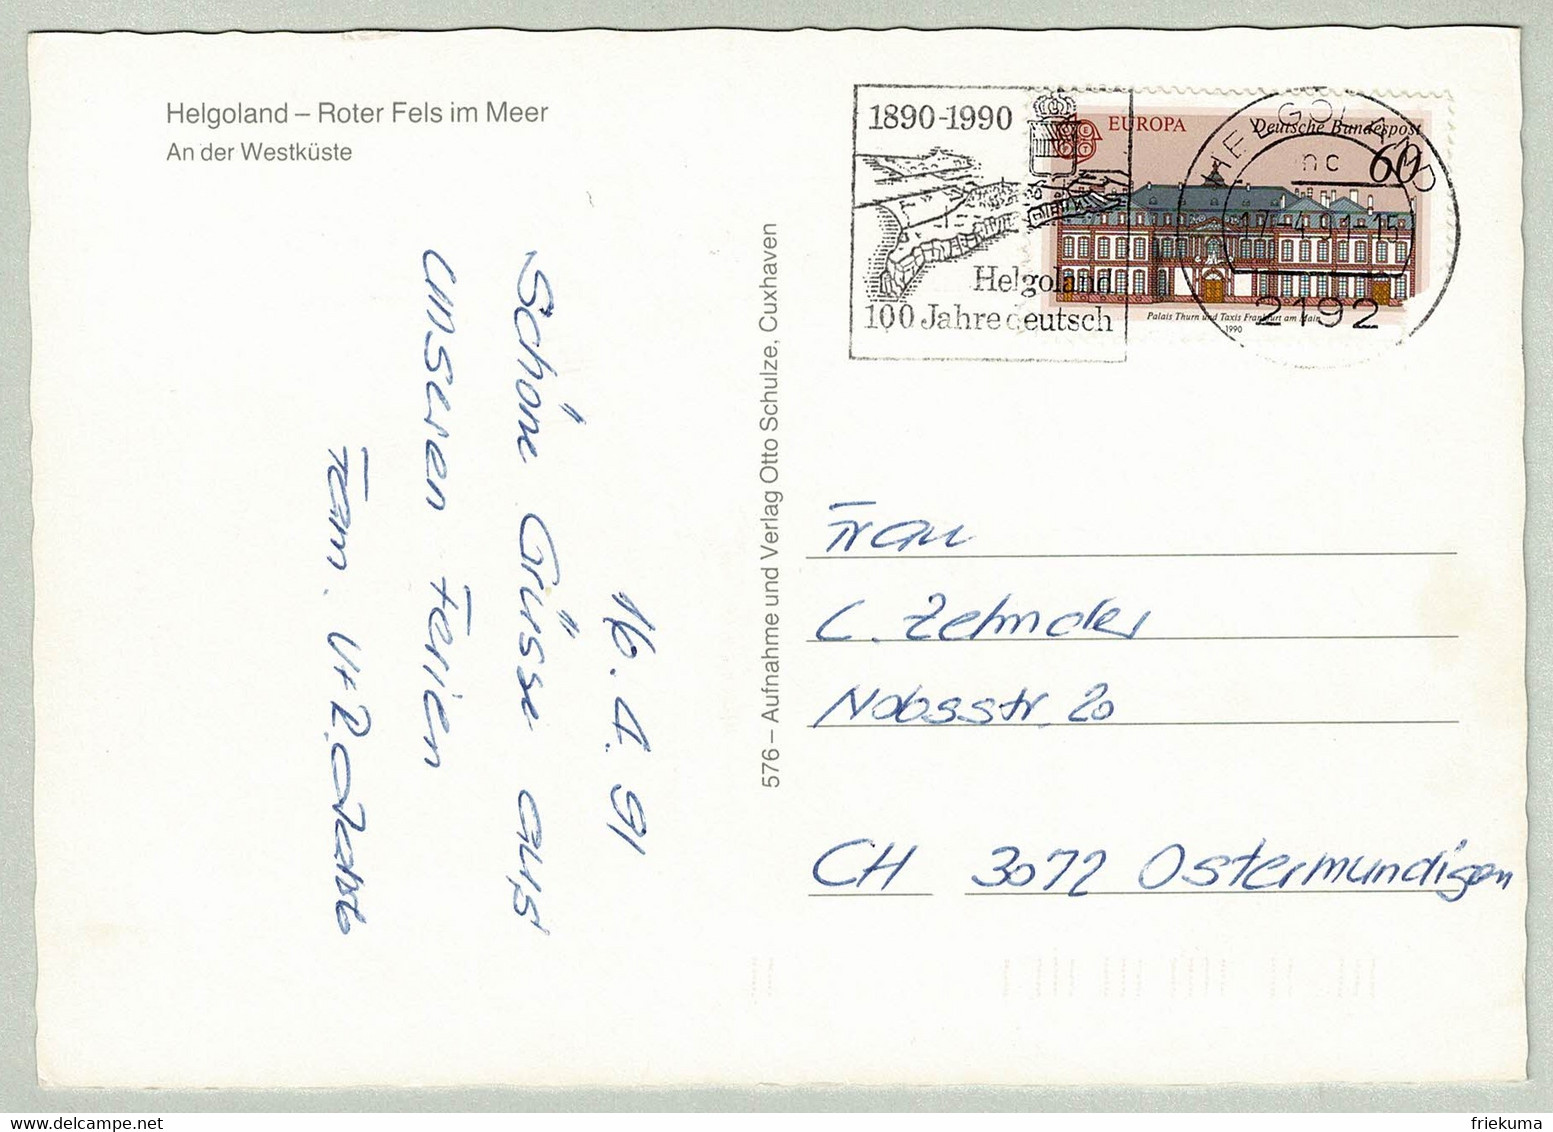 Deutsche Bundespost 1991, Postkarte Helgoland - Ostermundigen (Schweiz), Insel / Ile / Island - Inseln